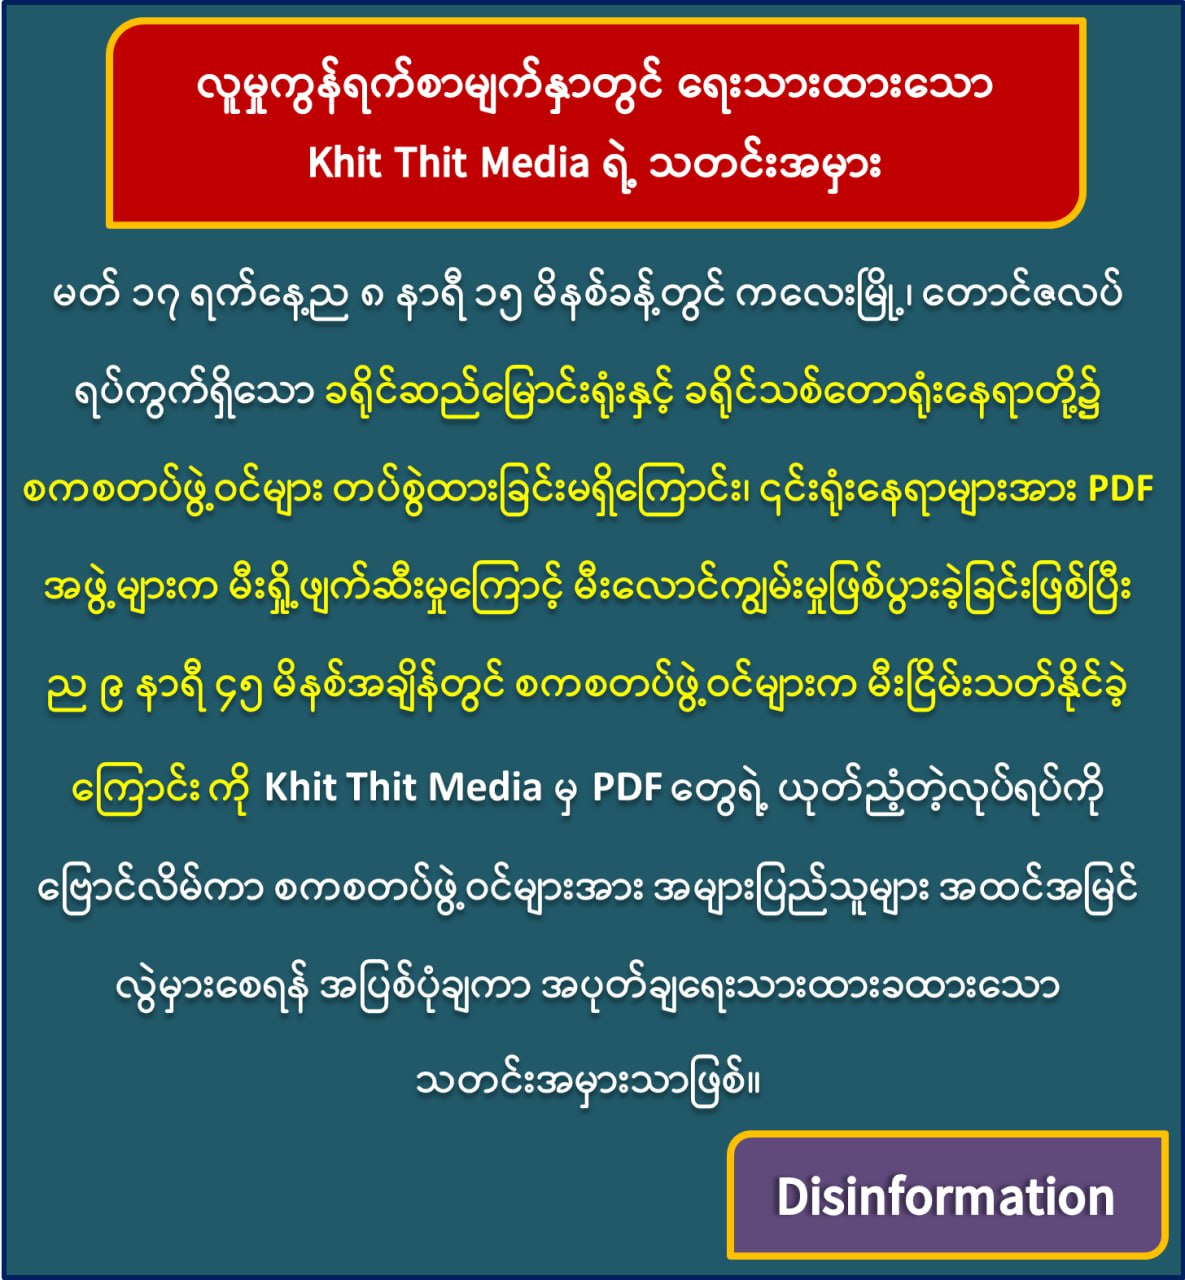 ကလေးမြို့အစိုးရရုံးကို တပ်က မီးရှို့တယ်လို့ Khit Thit မှသတင်းအမှားရေး